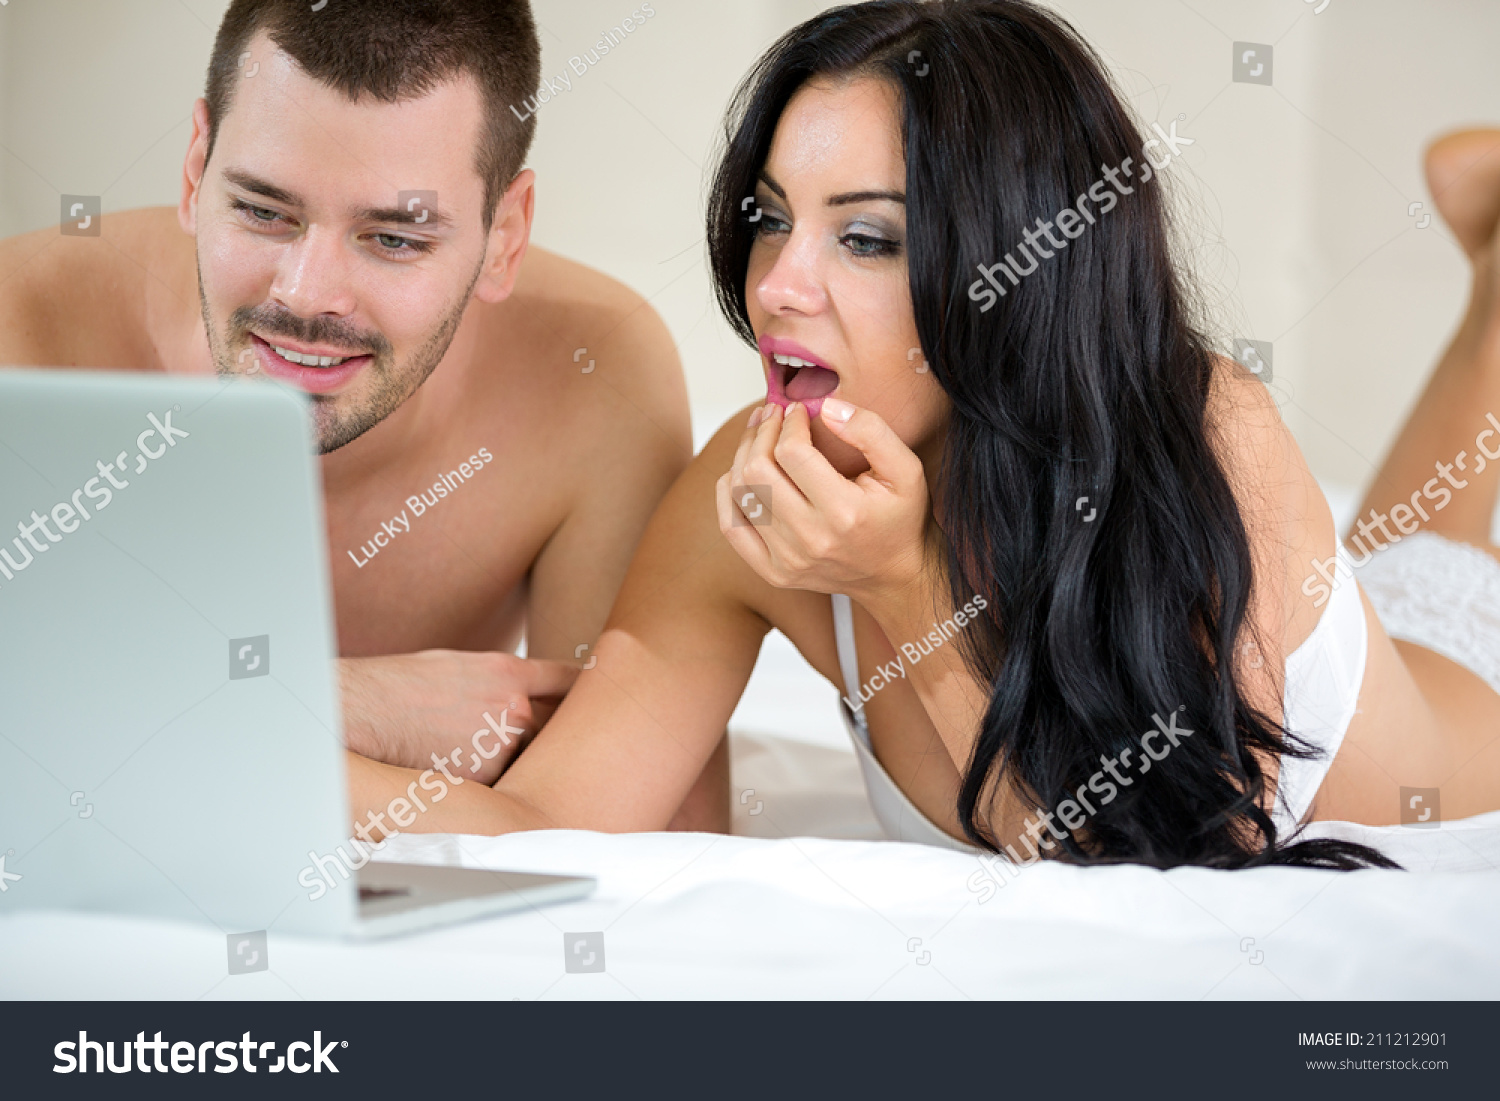 Movies xxx porn pics watch Amateur Wife